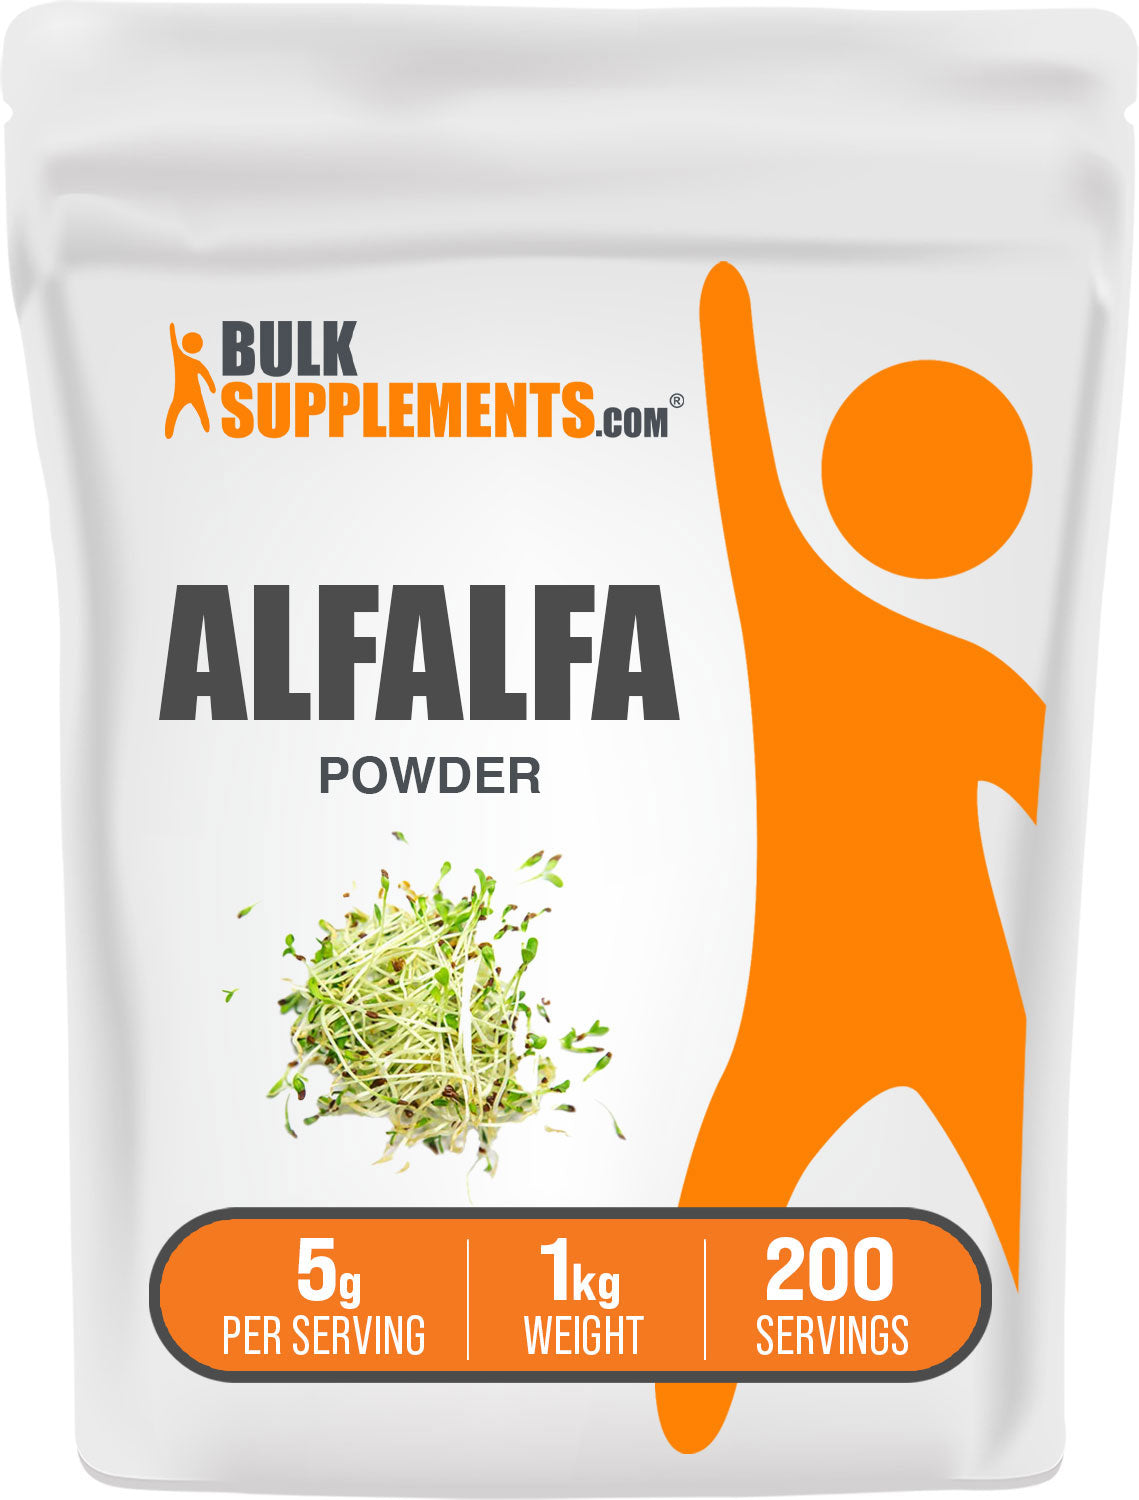 Alfalfa Powder 1kg bag